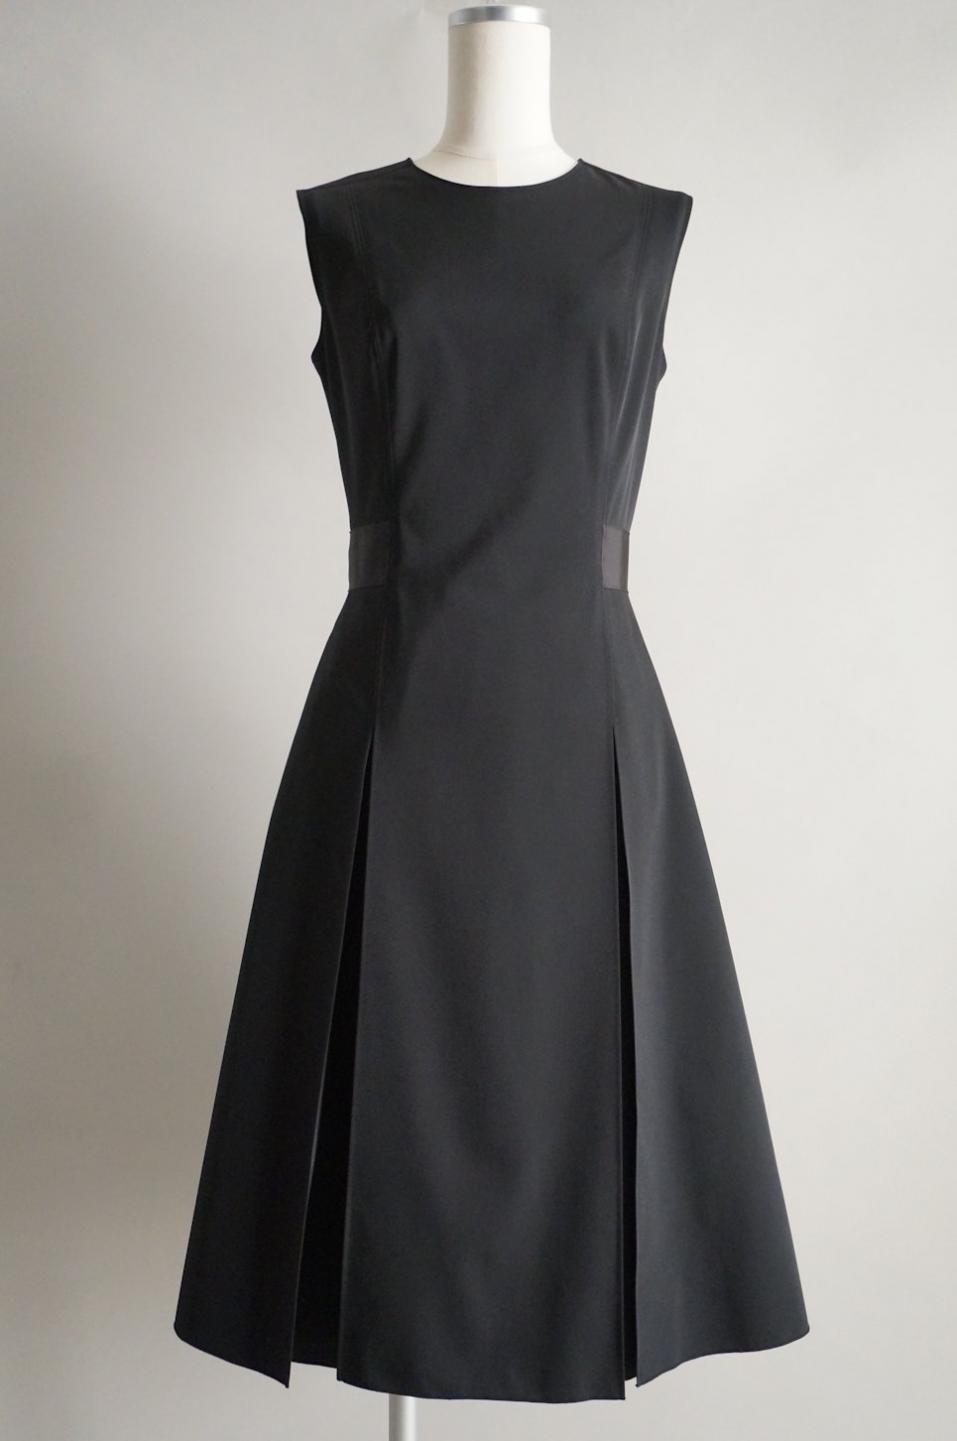 FOXEY NY ボックスプリーツワンピースドレス / レンタルリトルブラックドレス テン Rental Little Black Dress ten.